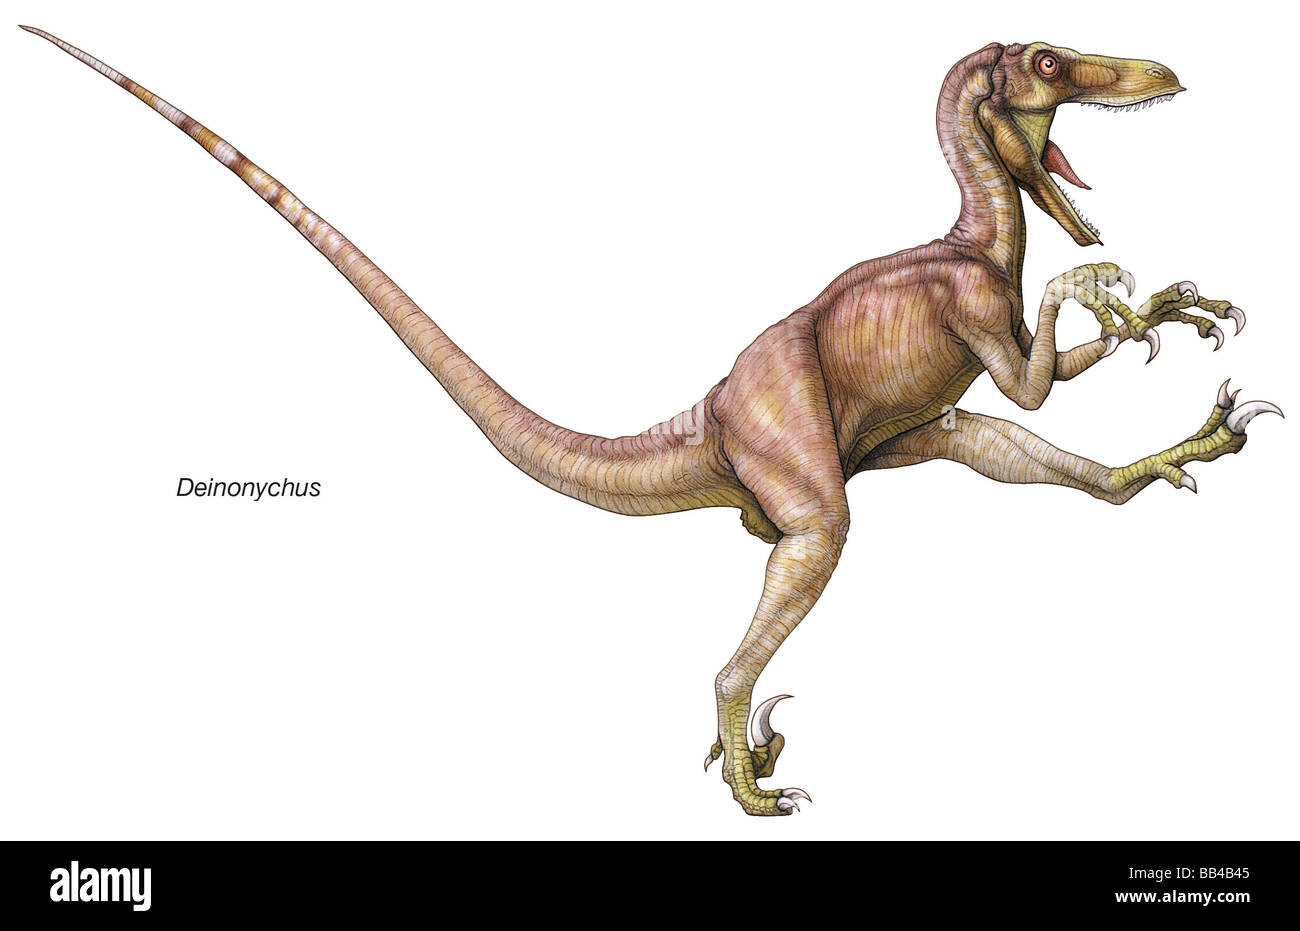 Dinosaurio Cretácico temprano Deinonychus, cuyo nombre significa "garra terrible", después de la enorme, garras afiladas en cada una de sus segundo dedos Foto de stock